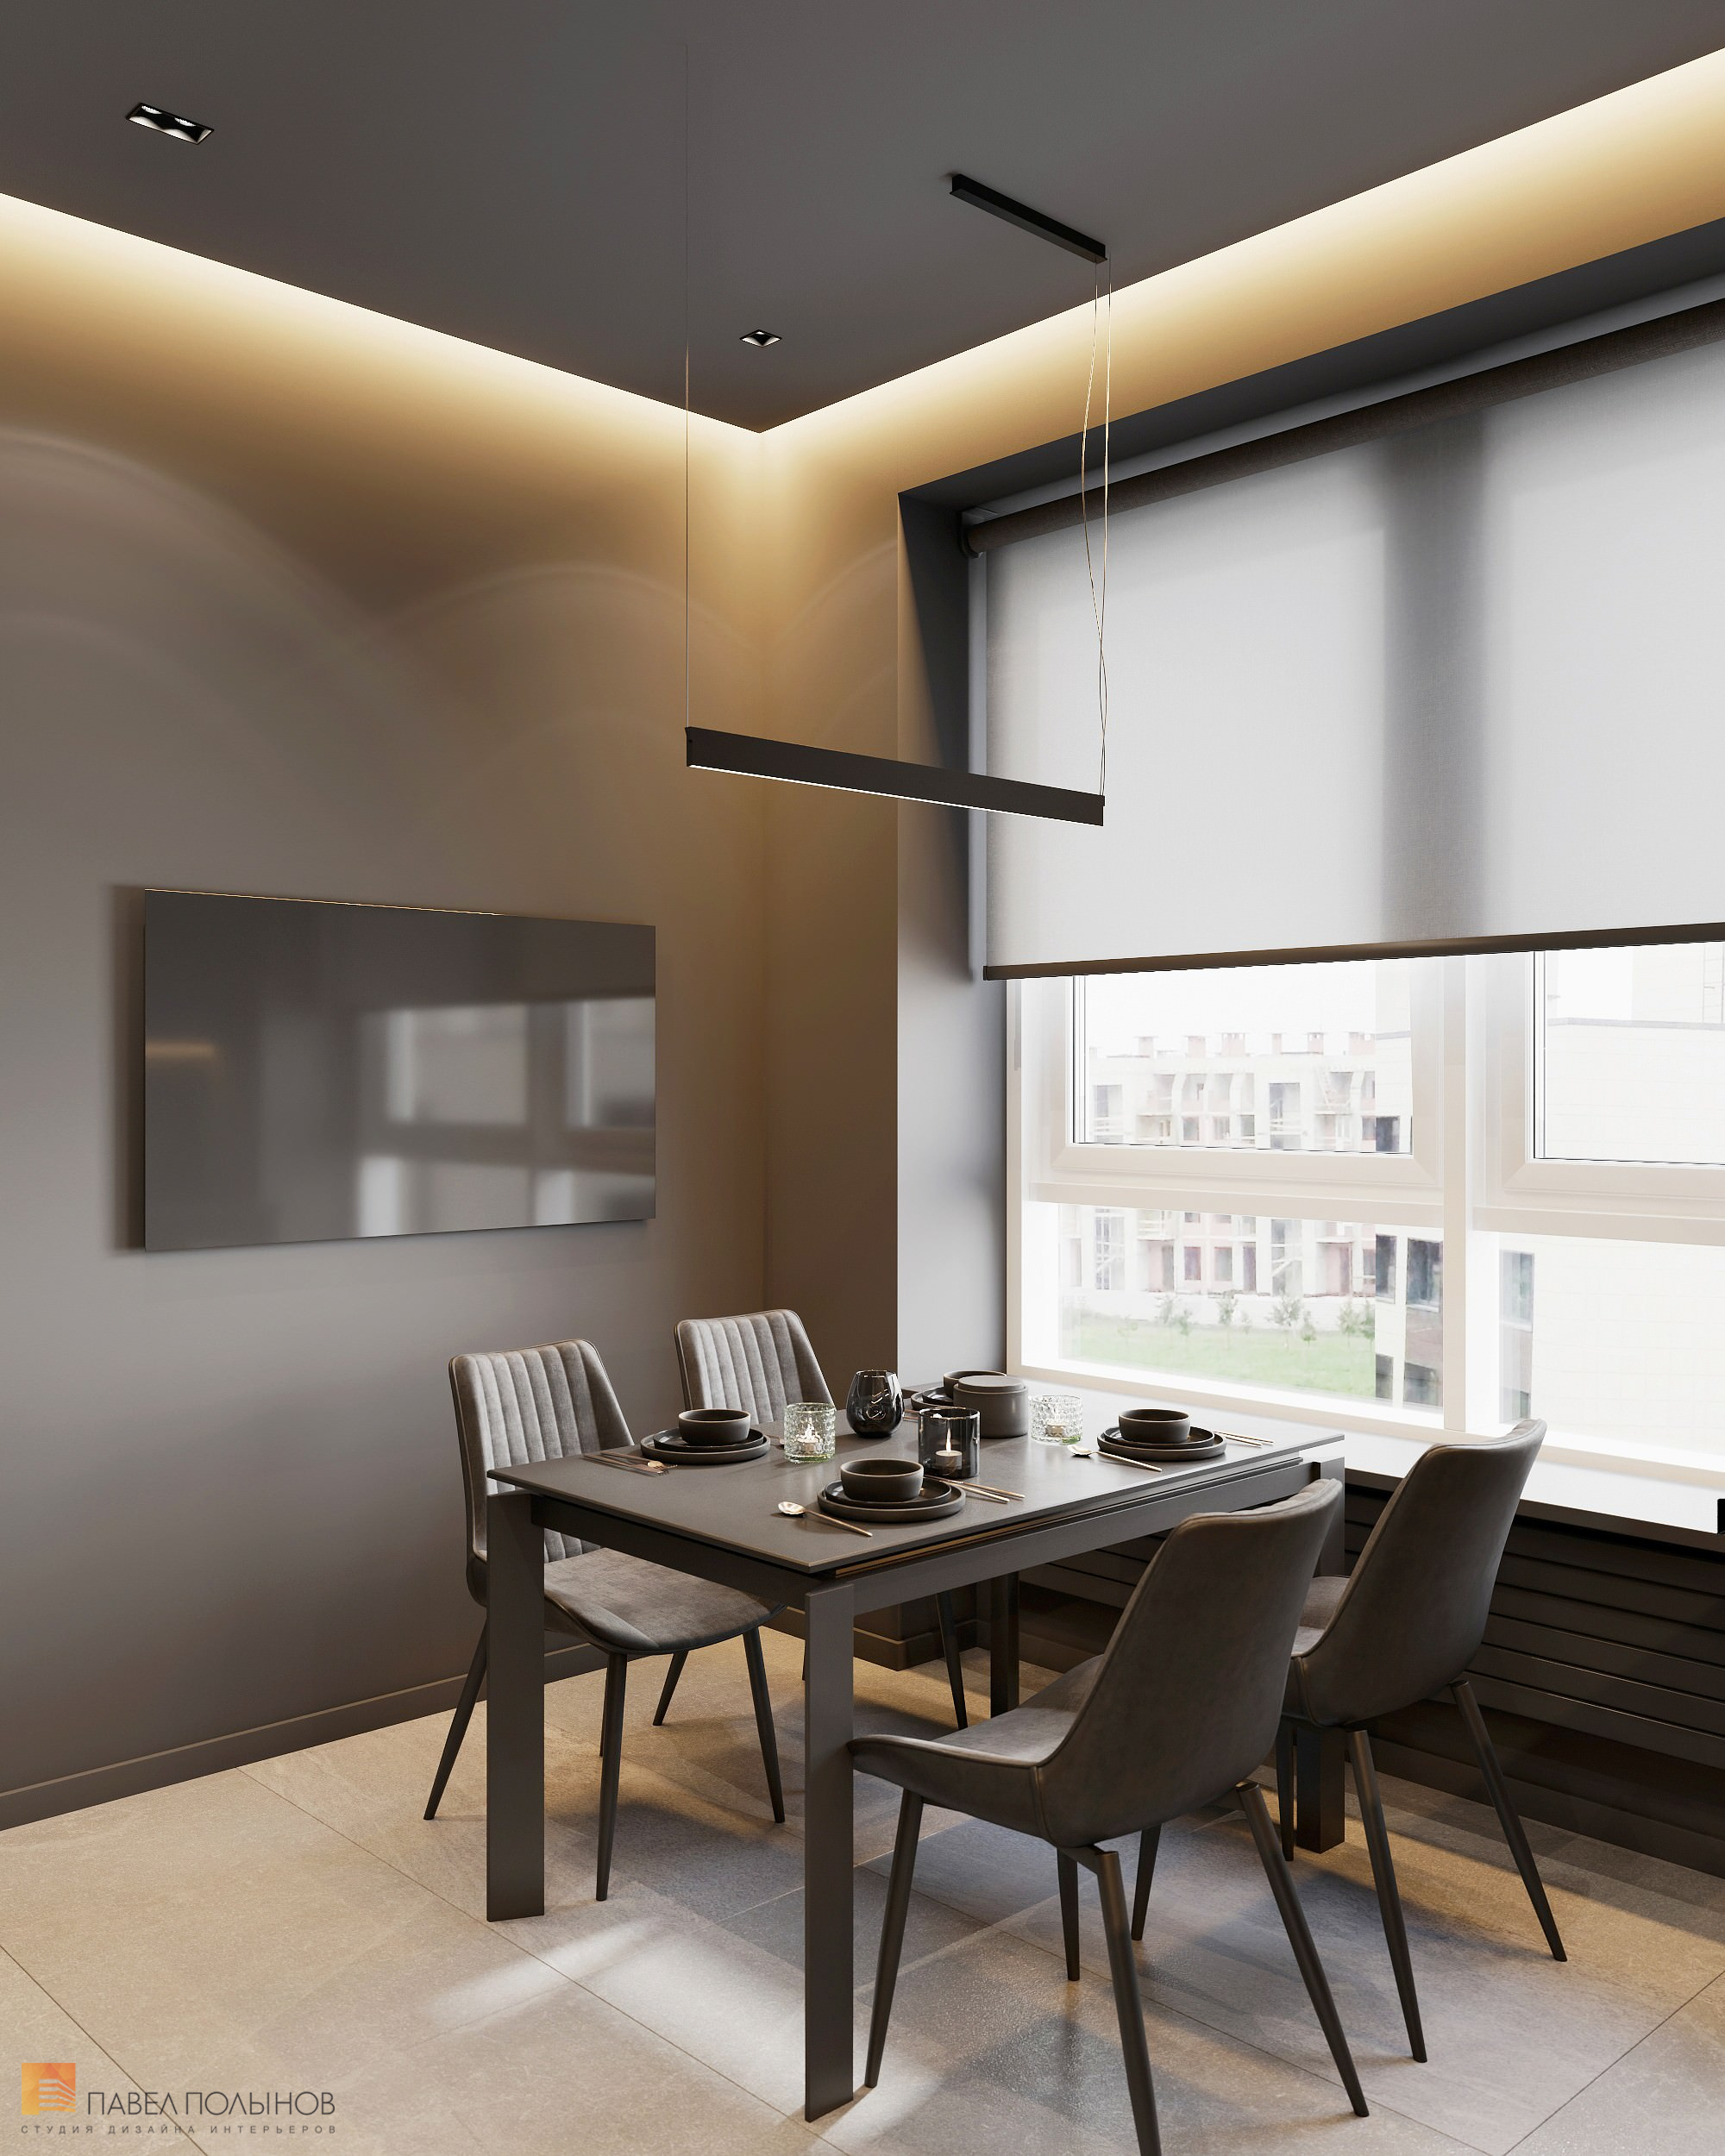 Фото дизайн интерьера кухни из проекта «Интерьер квартиры в современном стиле, ЖК «Символ», 64 кв.м.»